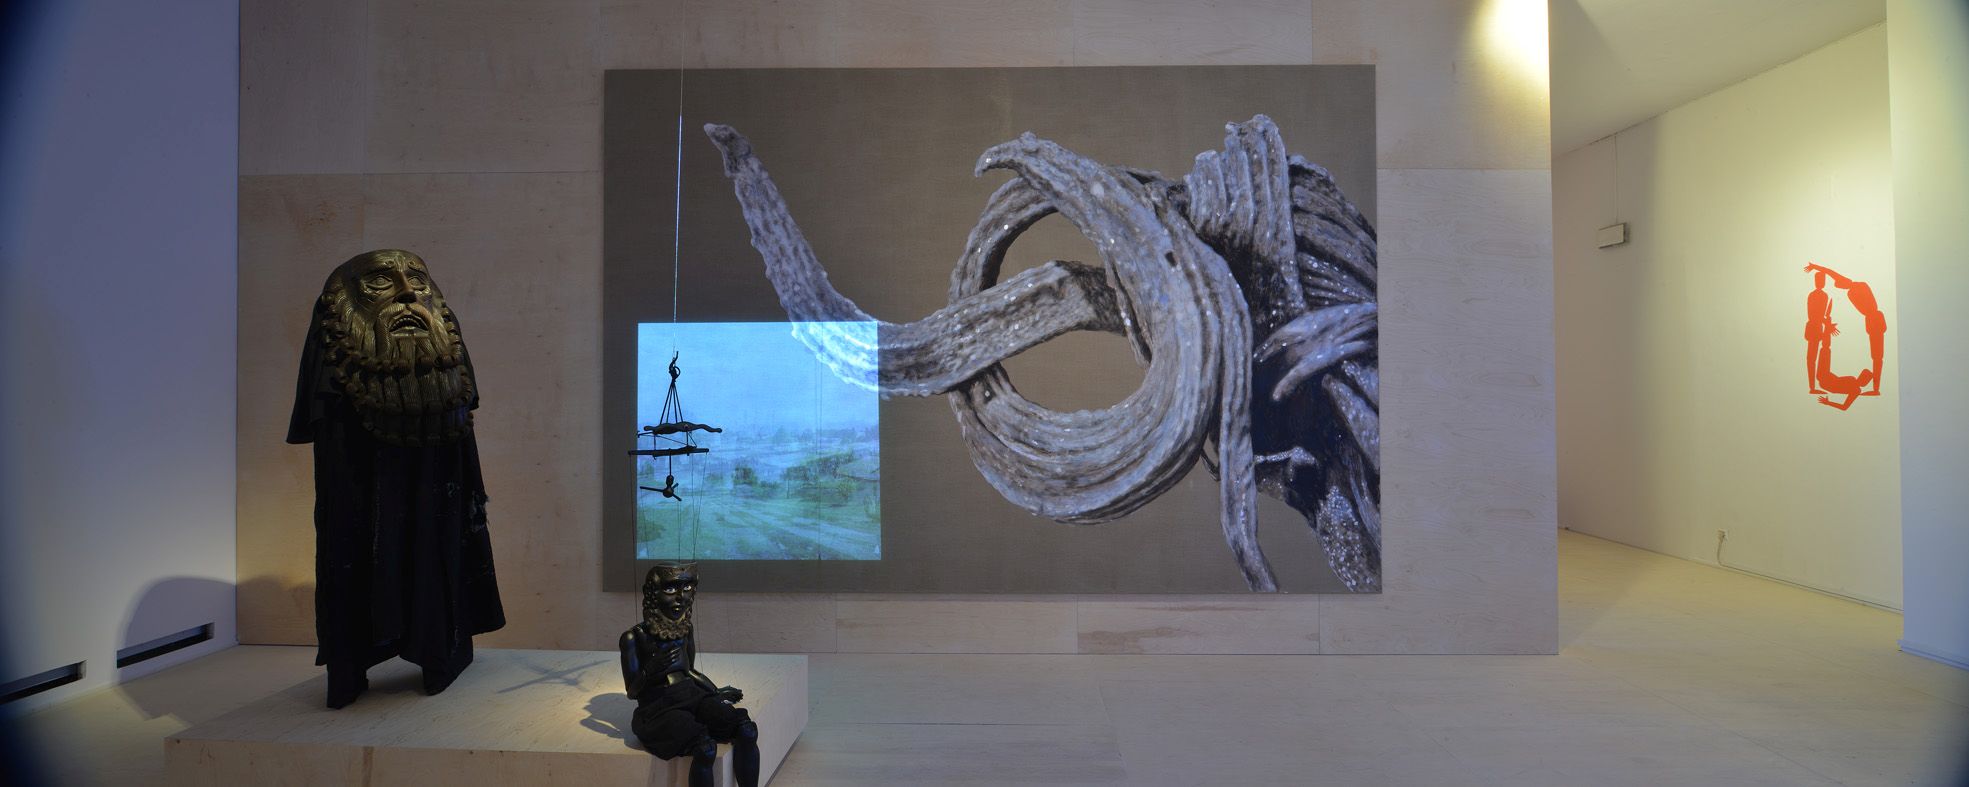 Rzeczy robią rzeczy, widok wystawy, fot. Jan Smaga